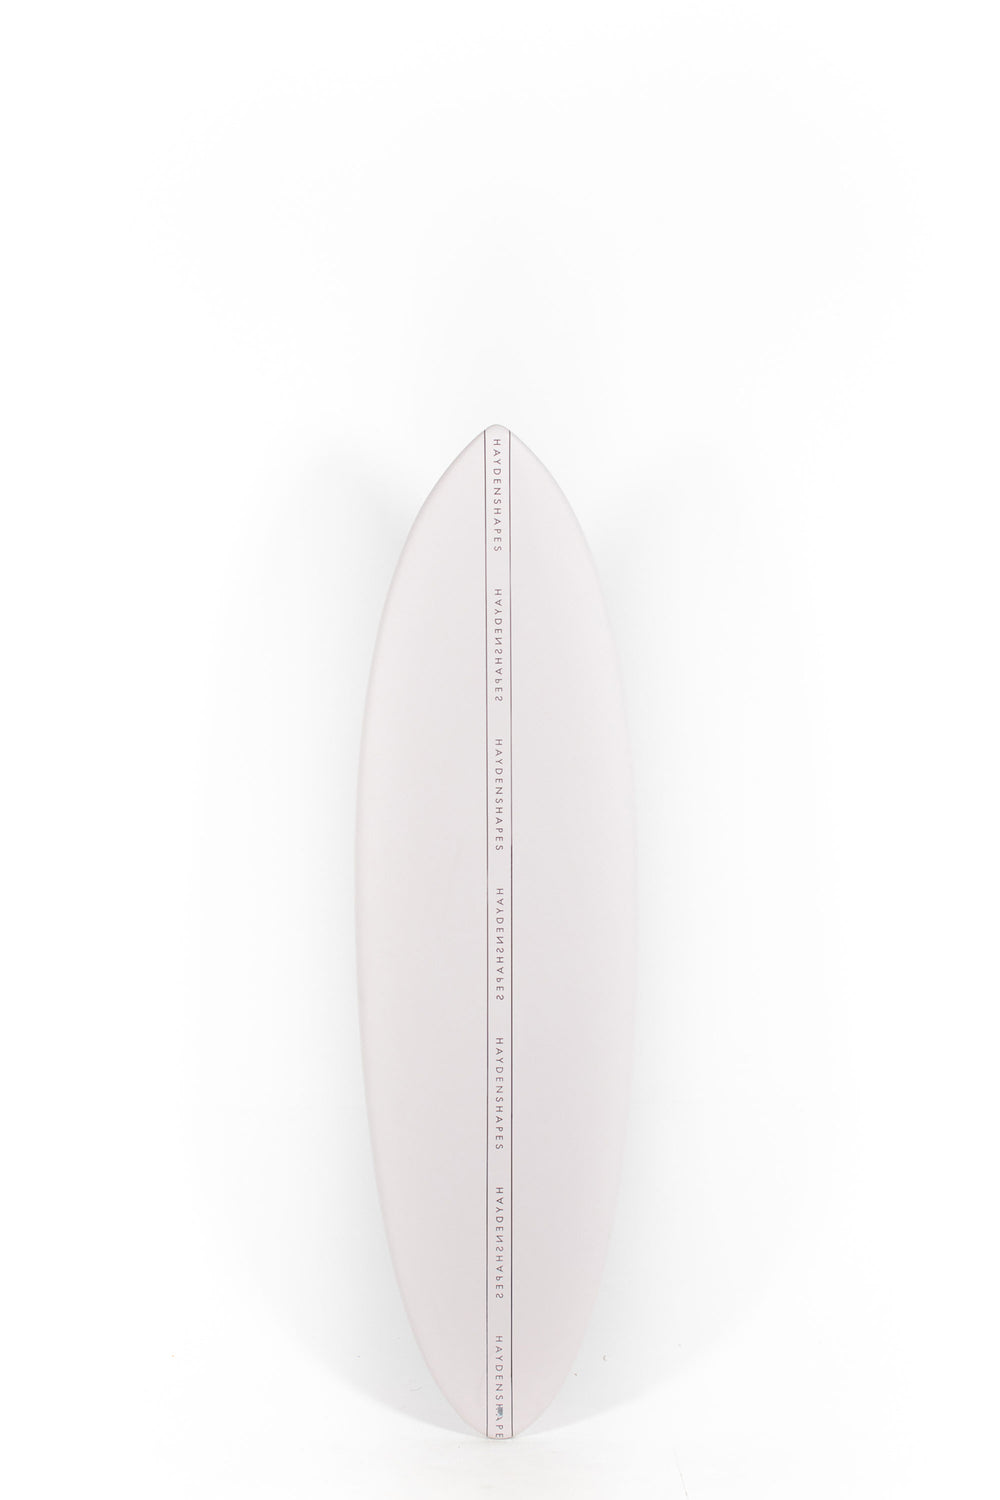 Pukas Surf Shop - HaydenShapes Surfboard - HYPTO KRYPTO SOFT - 6'4